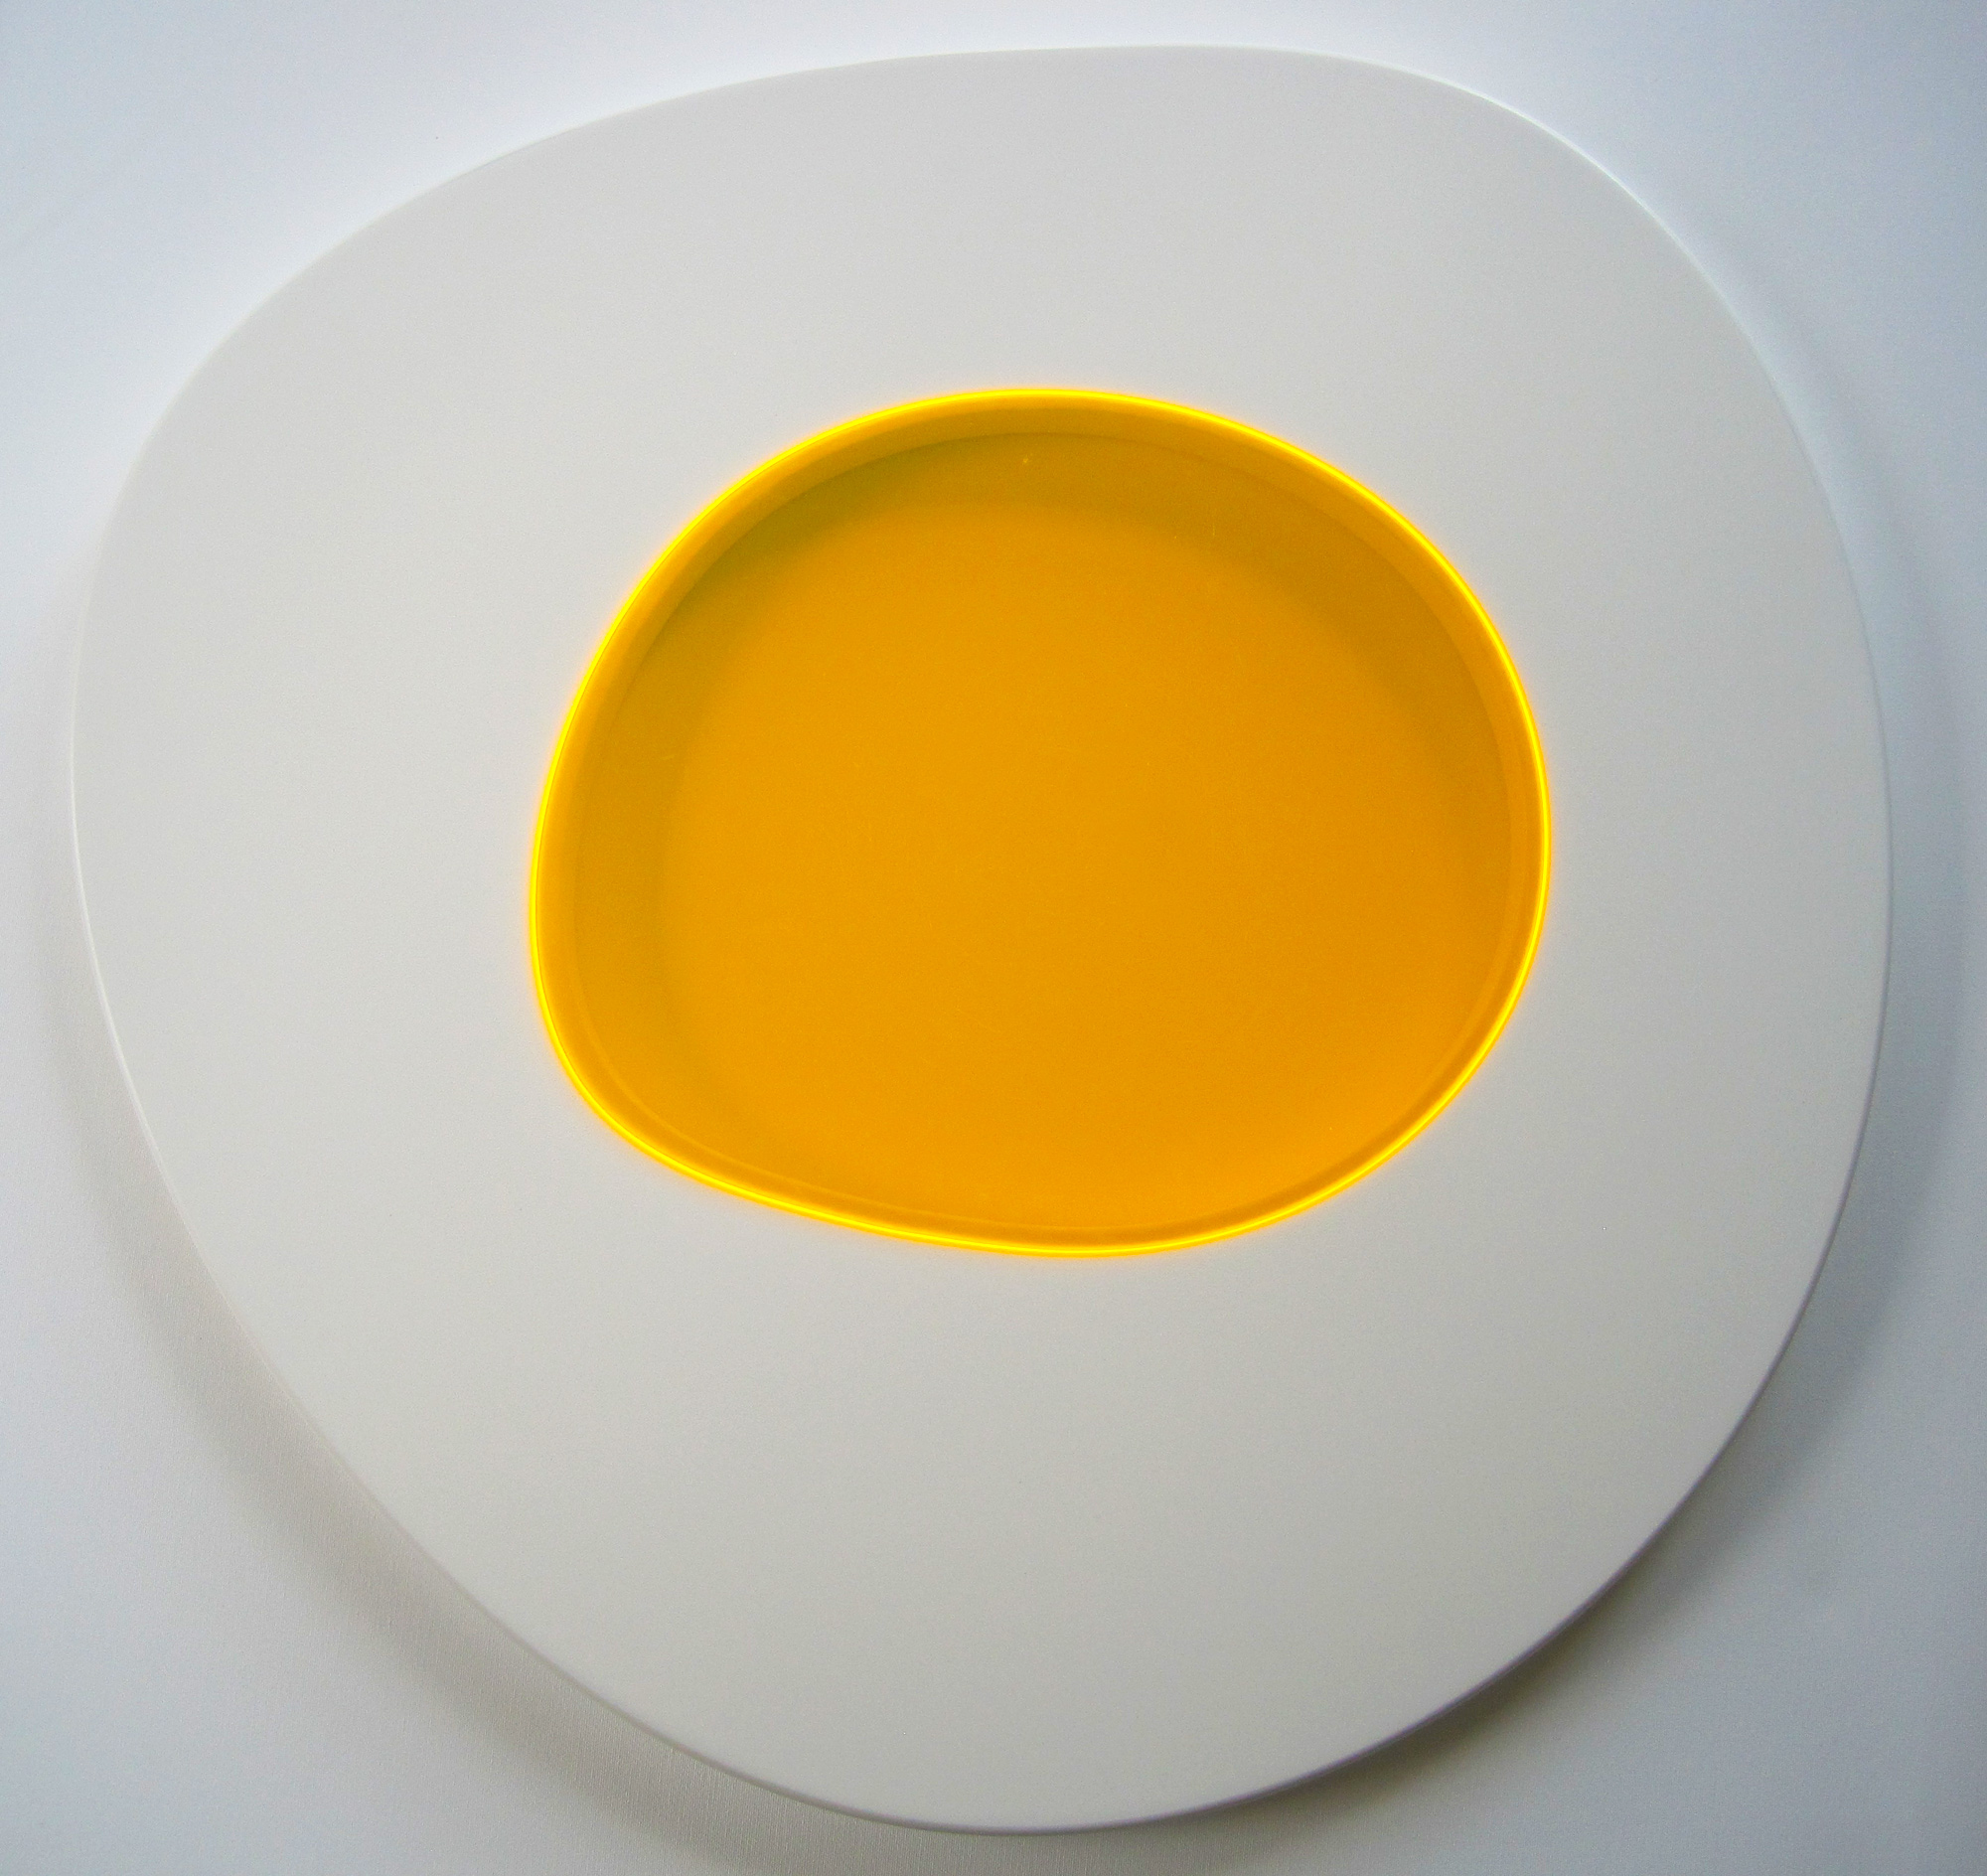 Friet Eggs Series - Spiegelei Figur, Tisch